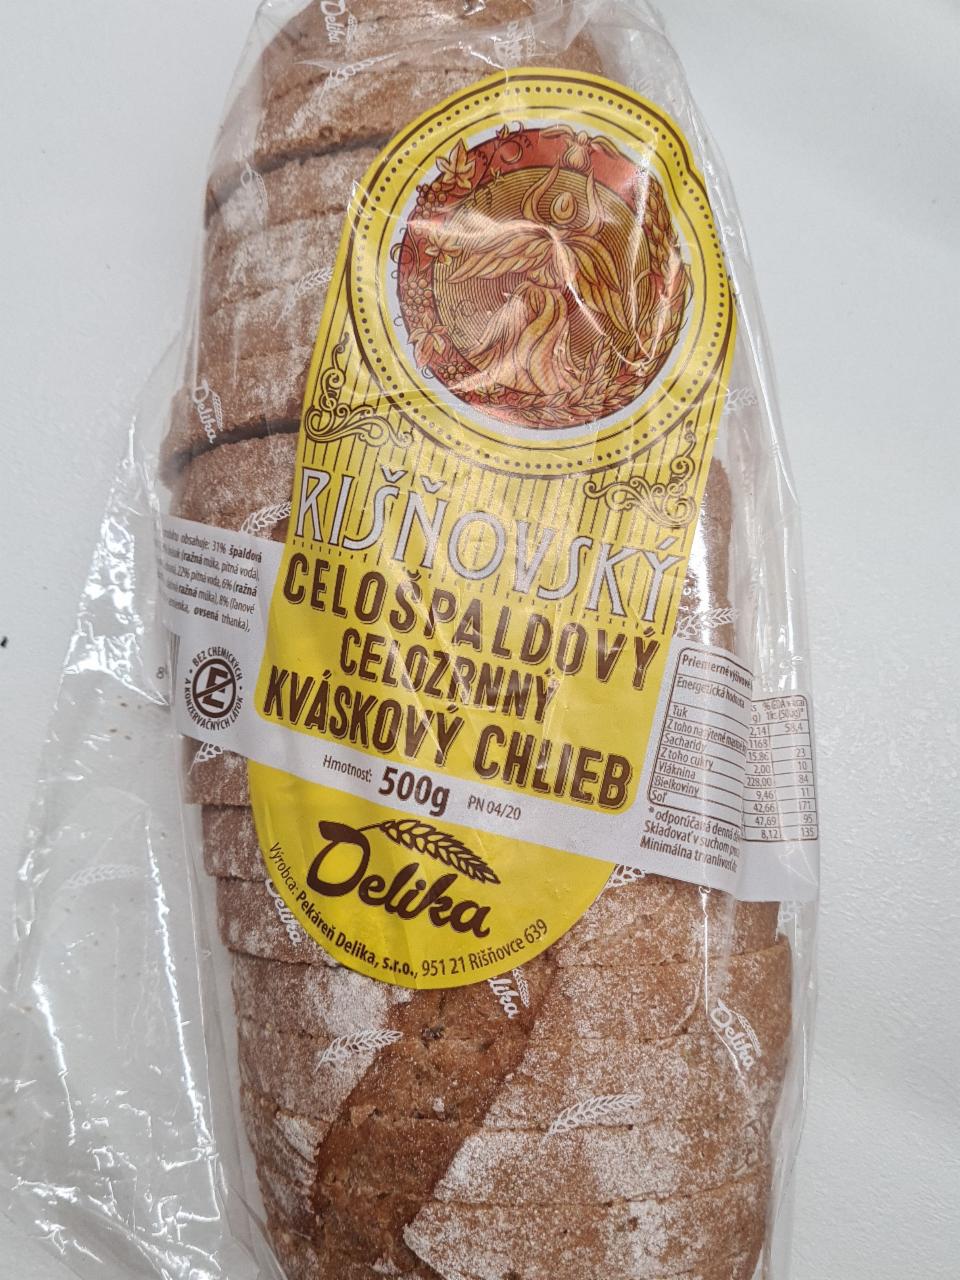 Fotografie - Rišňovský celošpaldový kváskový chlieb Delika